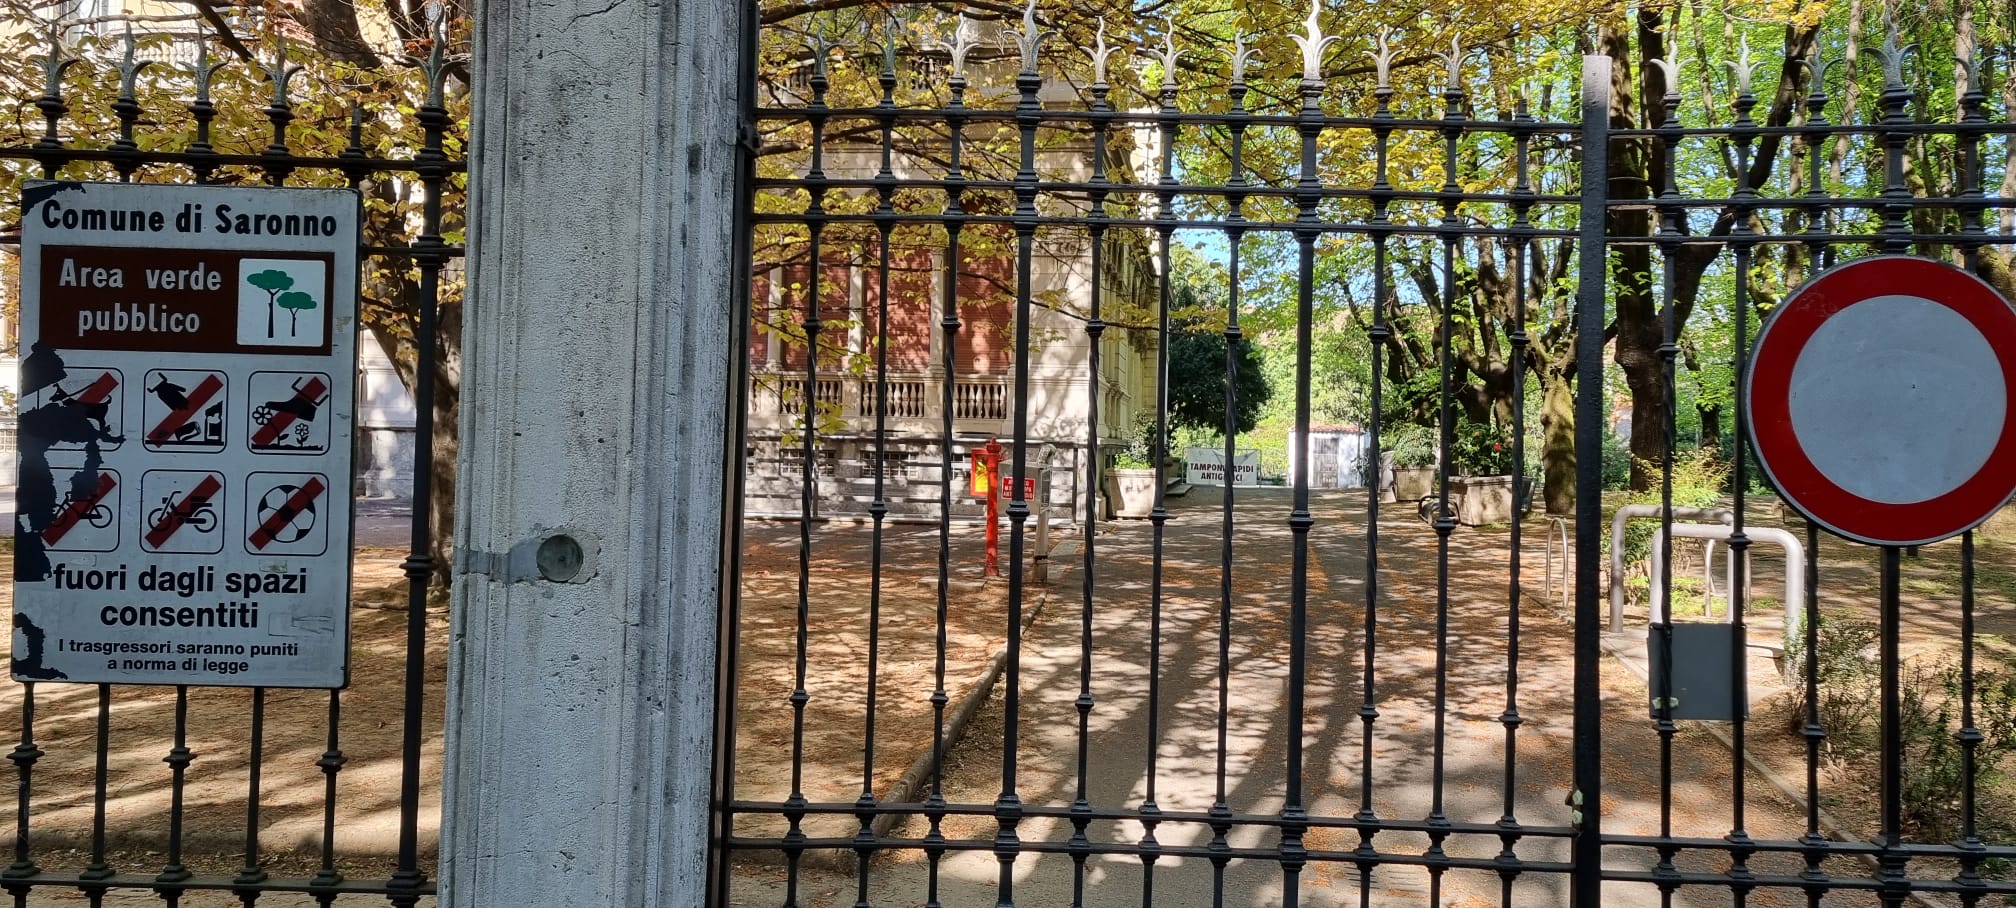 Ieri su ilS: parco chiuso a Pasqua proteste, scontro mortale in A9, spesa gratis all’Esselunga